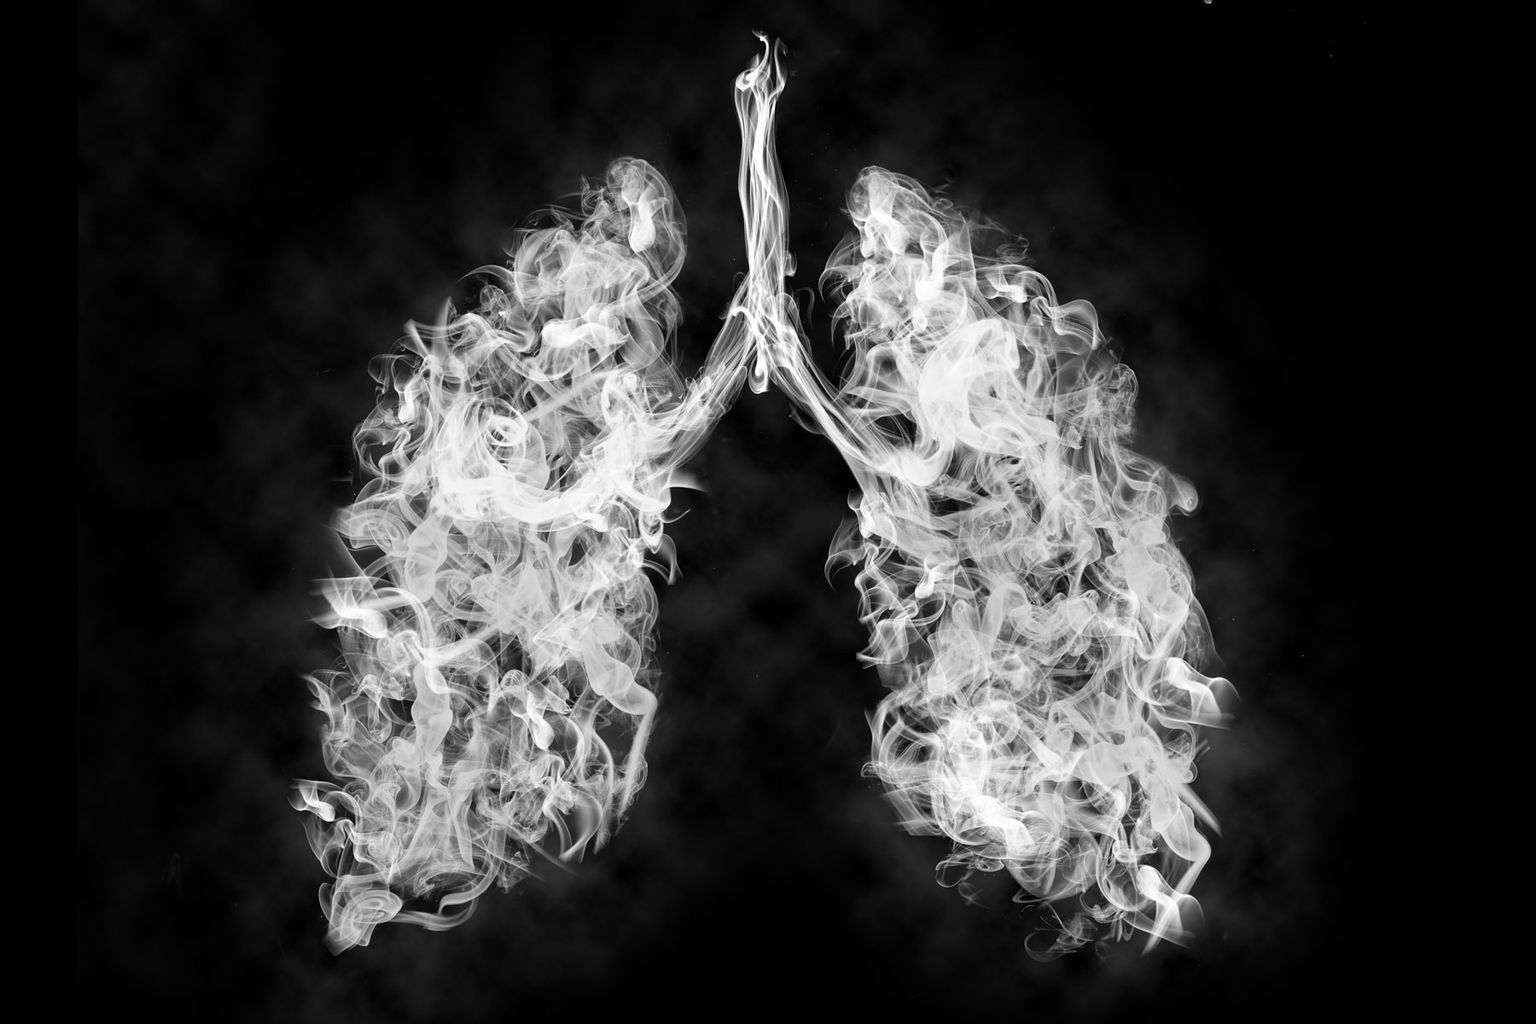 Kas suitsetaja kopsud koosnevad suitsust?